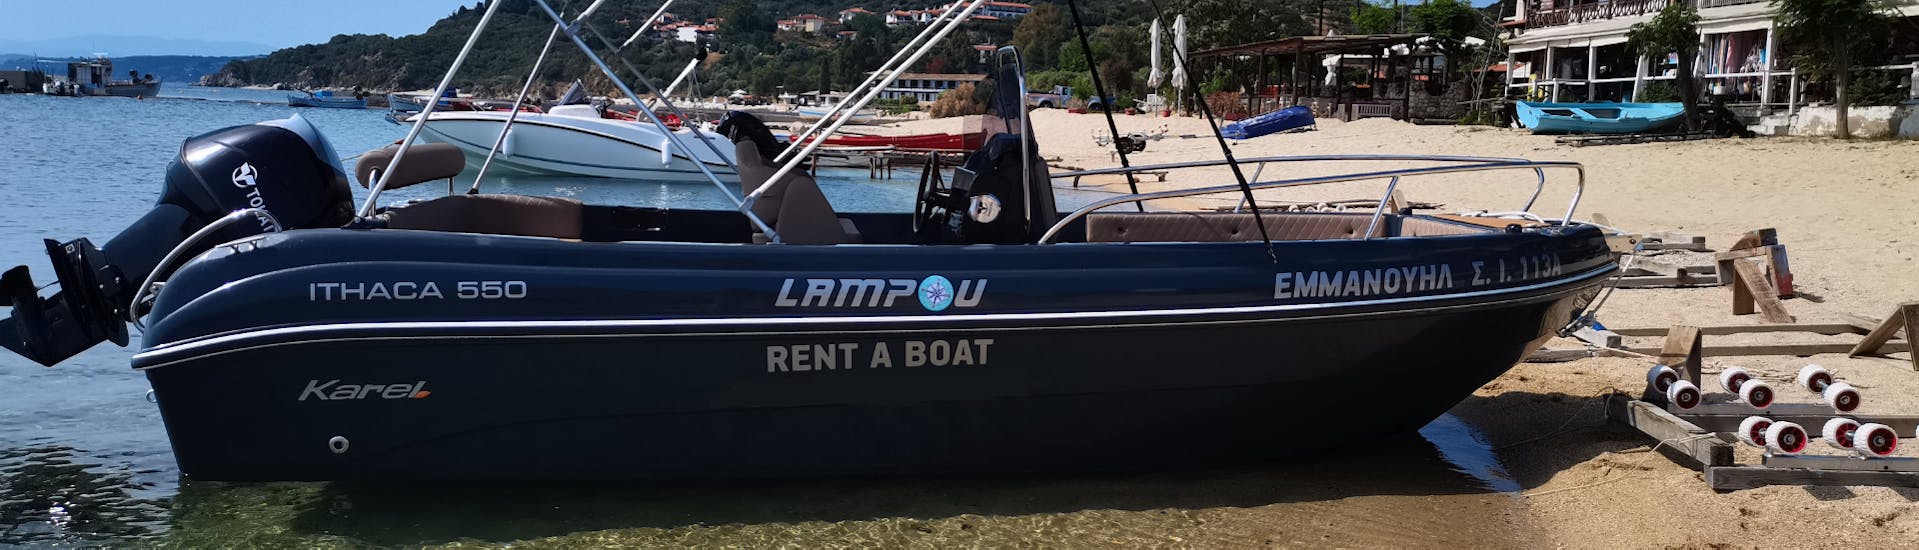 Onze boot voor 8 personen wacht op je tijdens de bootverhuur in Ouranoupoli (tot 8 personen) zonder Licentie met Rent a Boat Lampou.